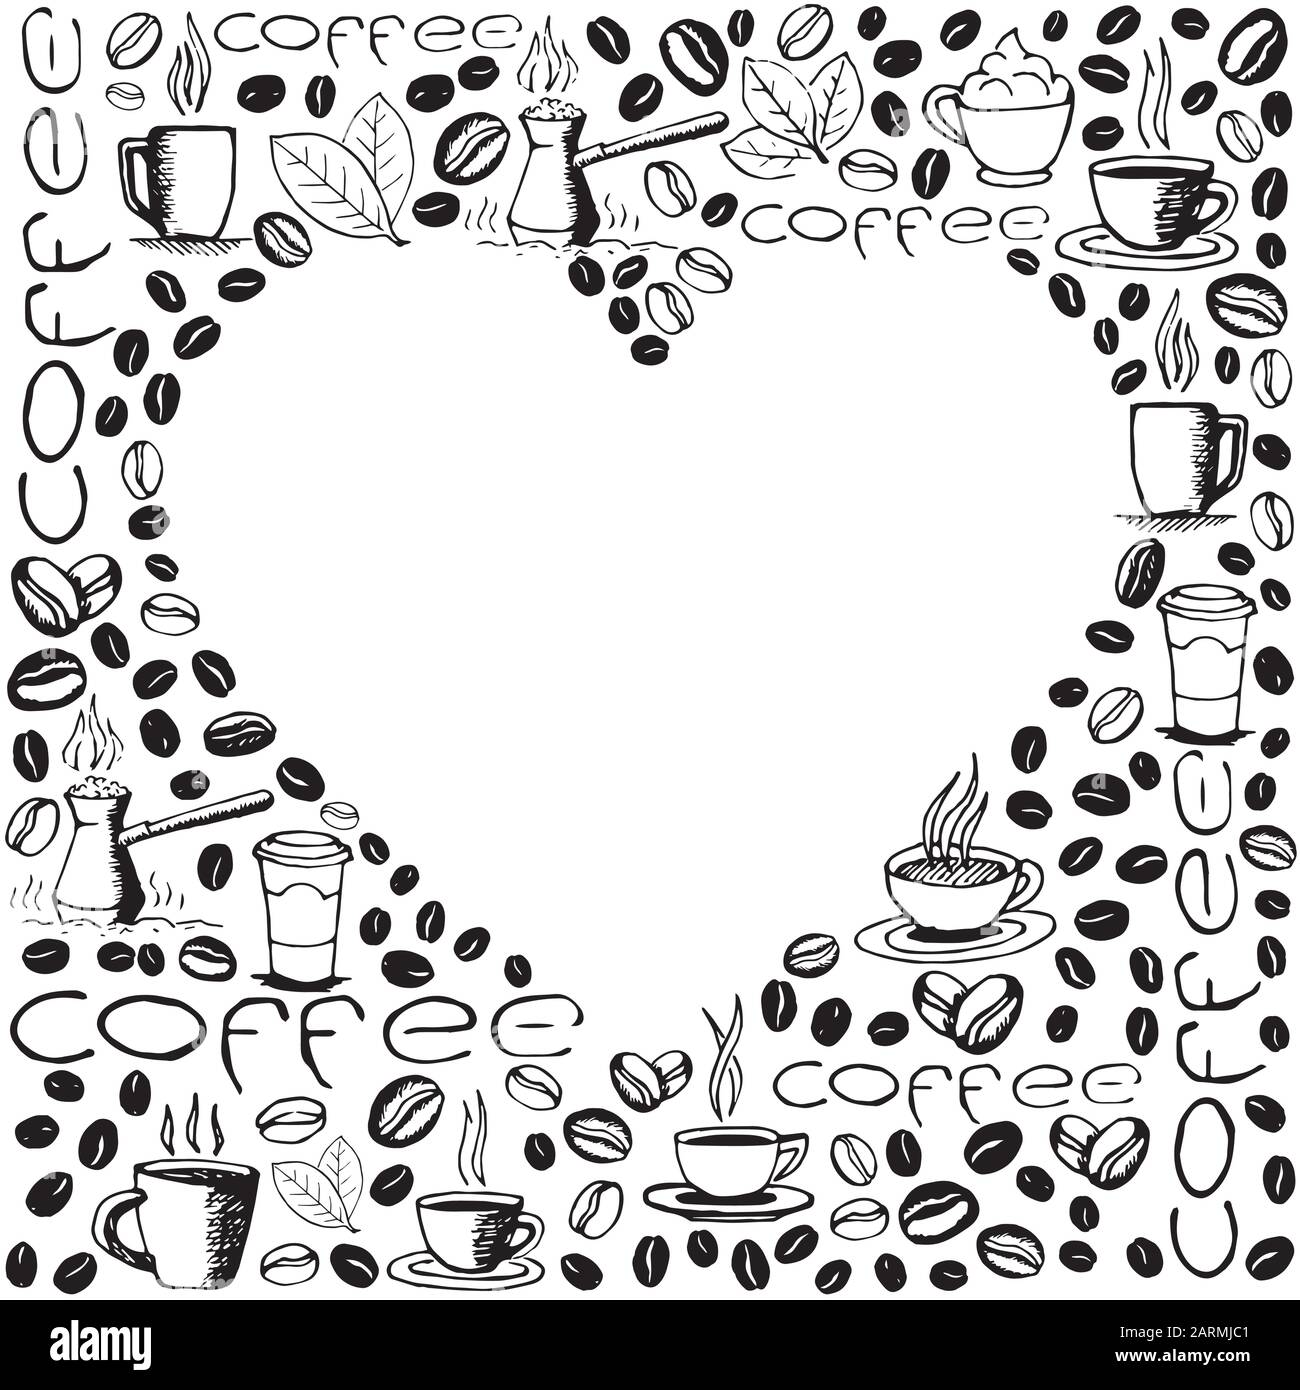 Kaffeesymbole im Hintergrund mit leerer Herzform im Inneren. Handgezeichnetes, skizzenhaftes Muster. Vektor eps8-Abbildung. Stock Vektor